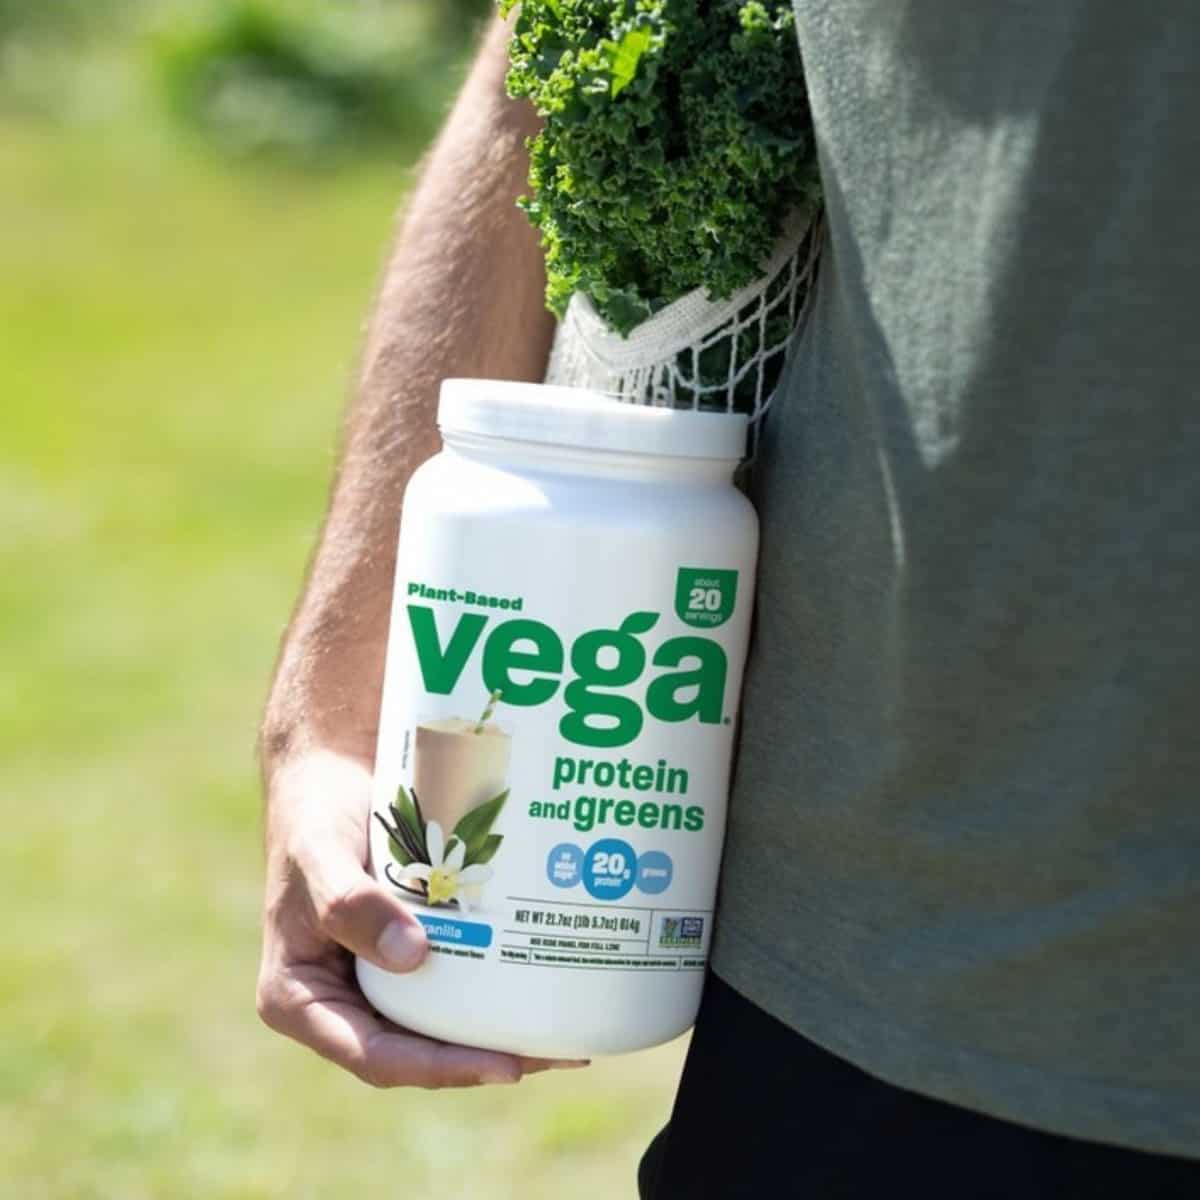 Vega protein powder.